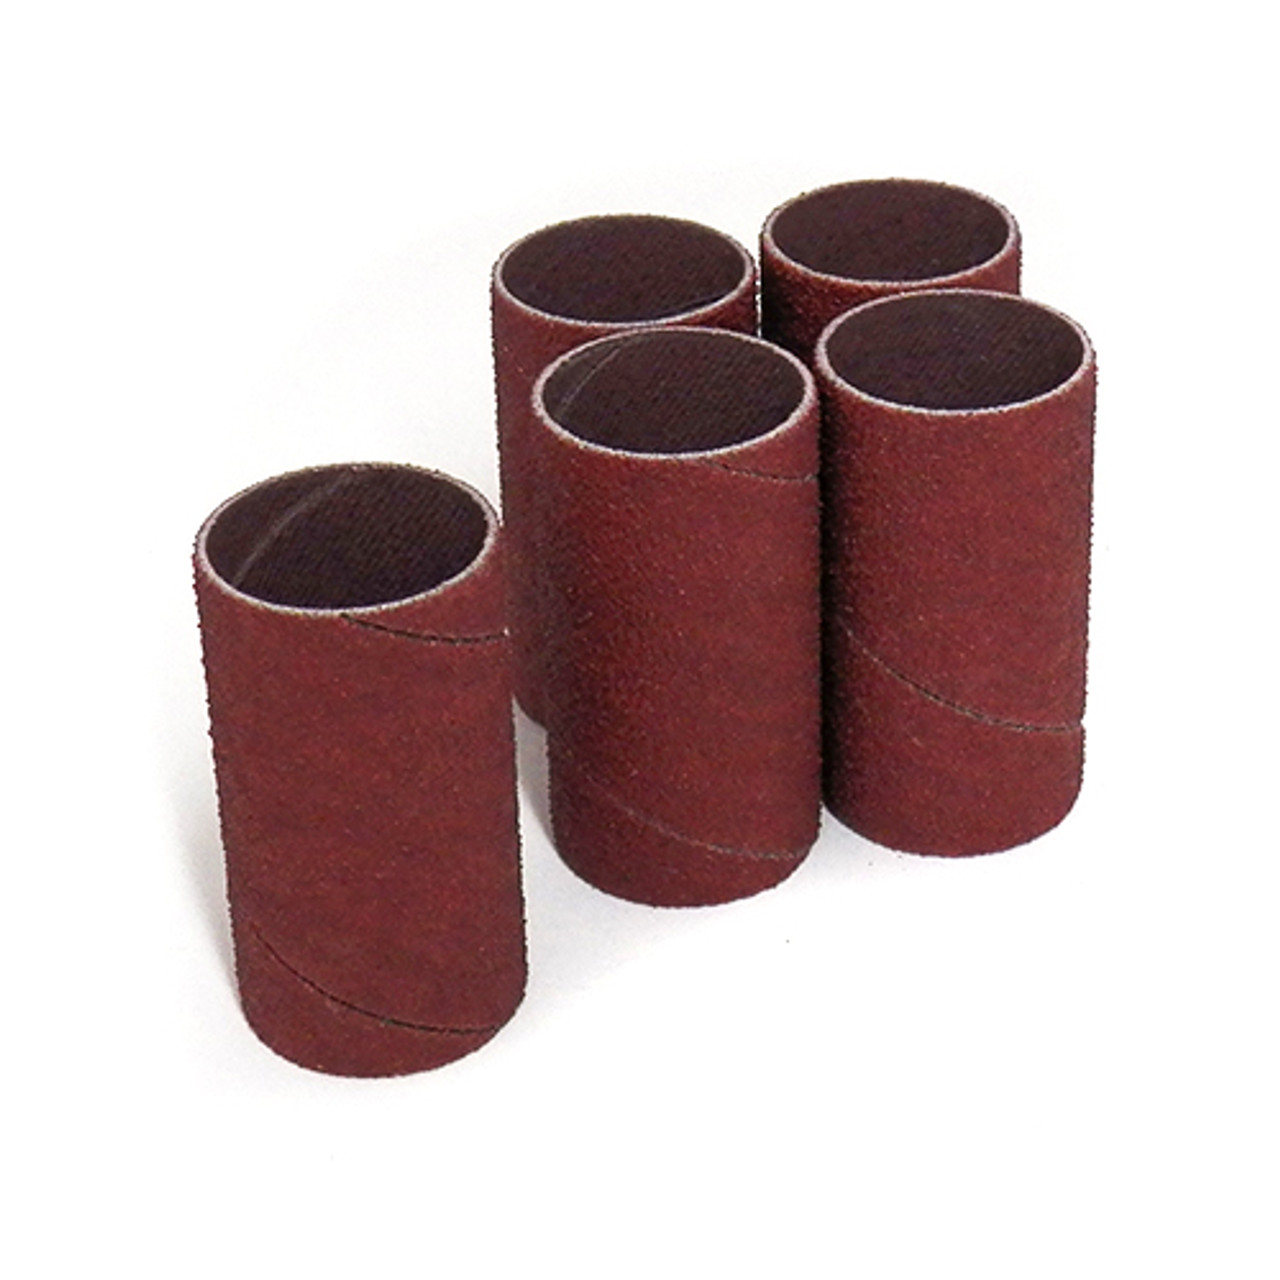 Klingspor Abrasives Aluminum Oxide Sanding Sleeves, 1"x 2" 150 Grit, 5pk